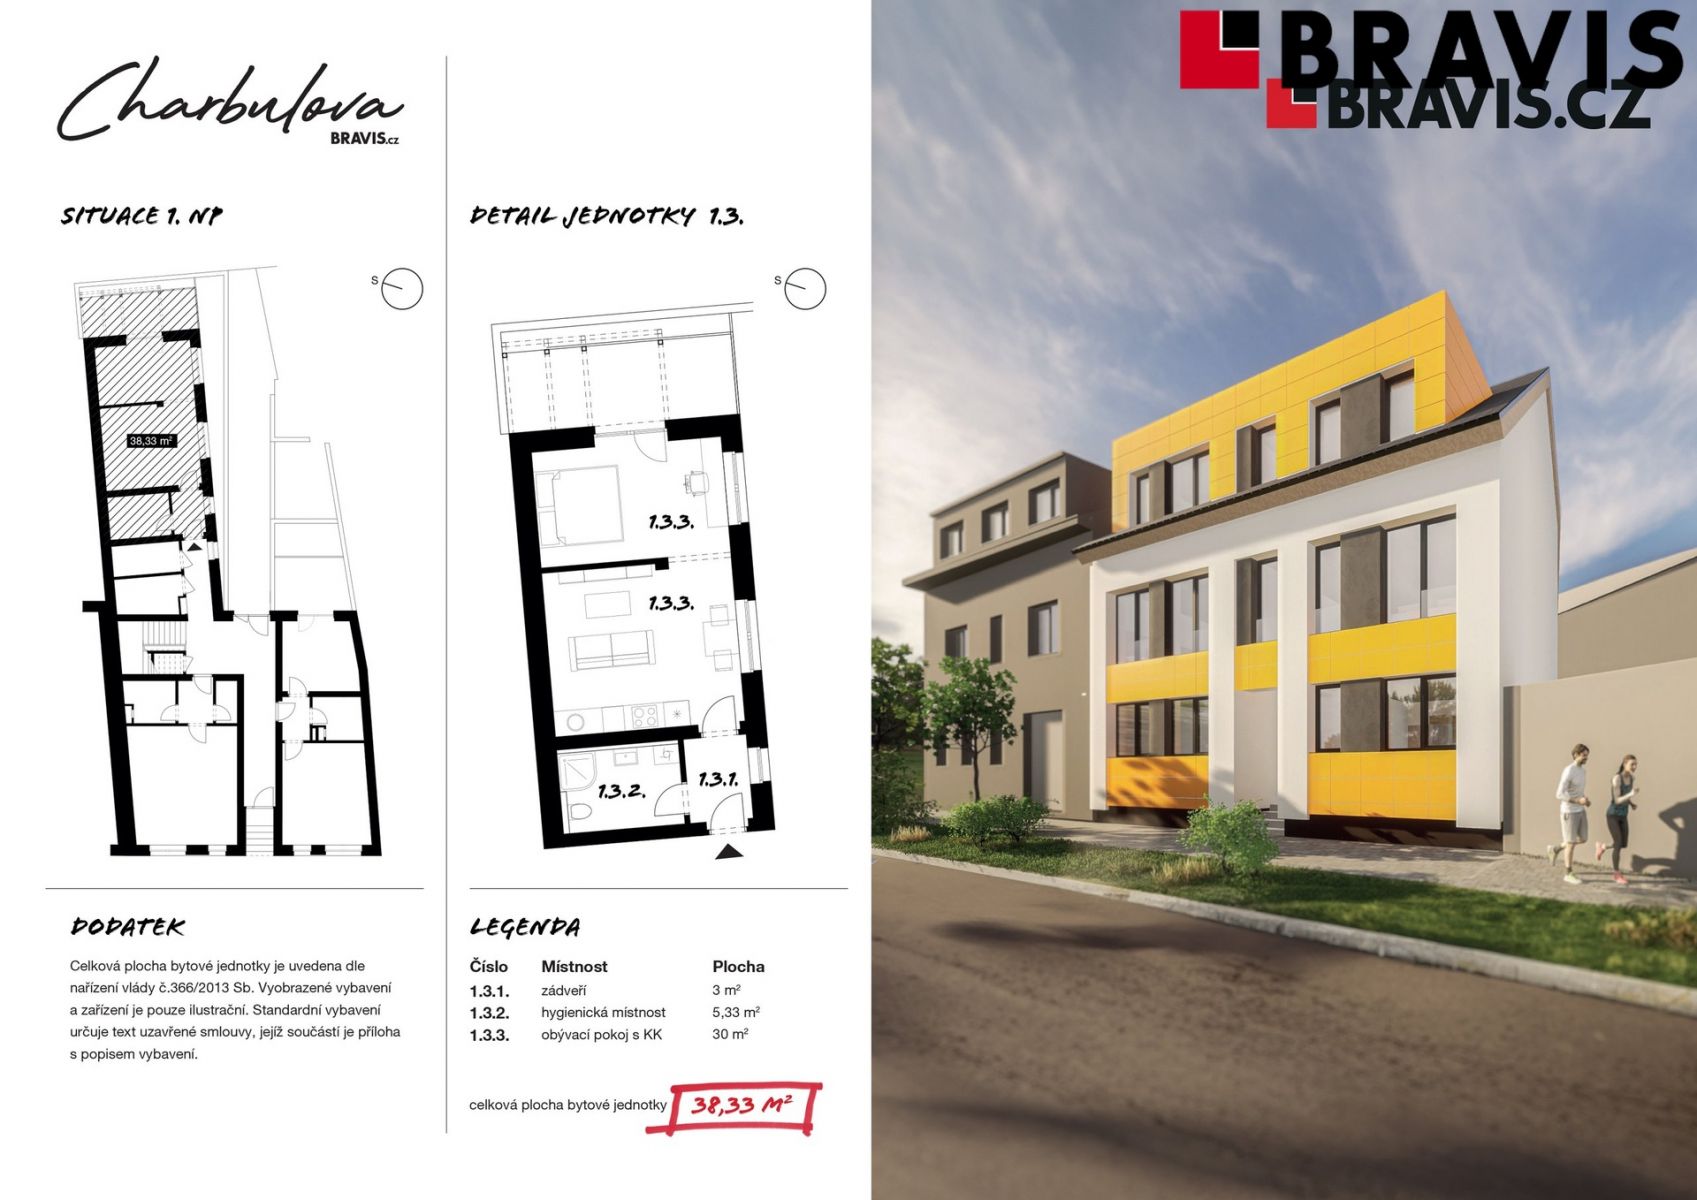 Prodej novostavby bytu 1+kk, ulice Charbulova, Brno - Černovice, možnost parkování, obrázek č. 2